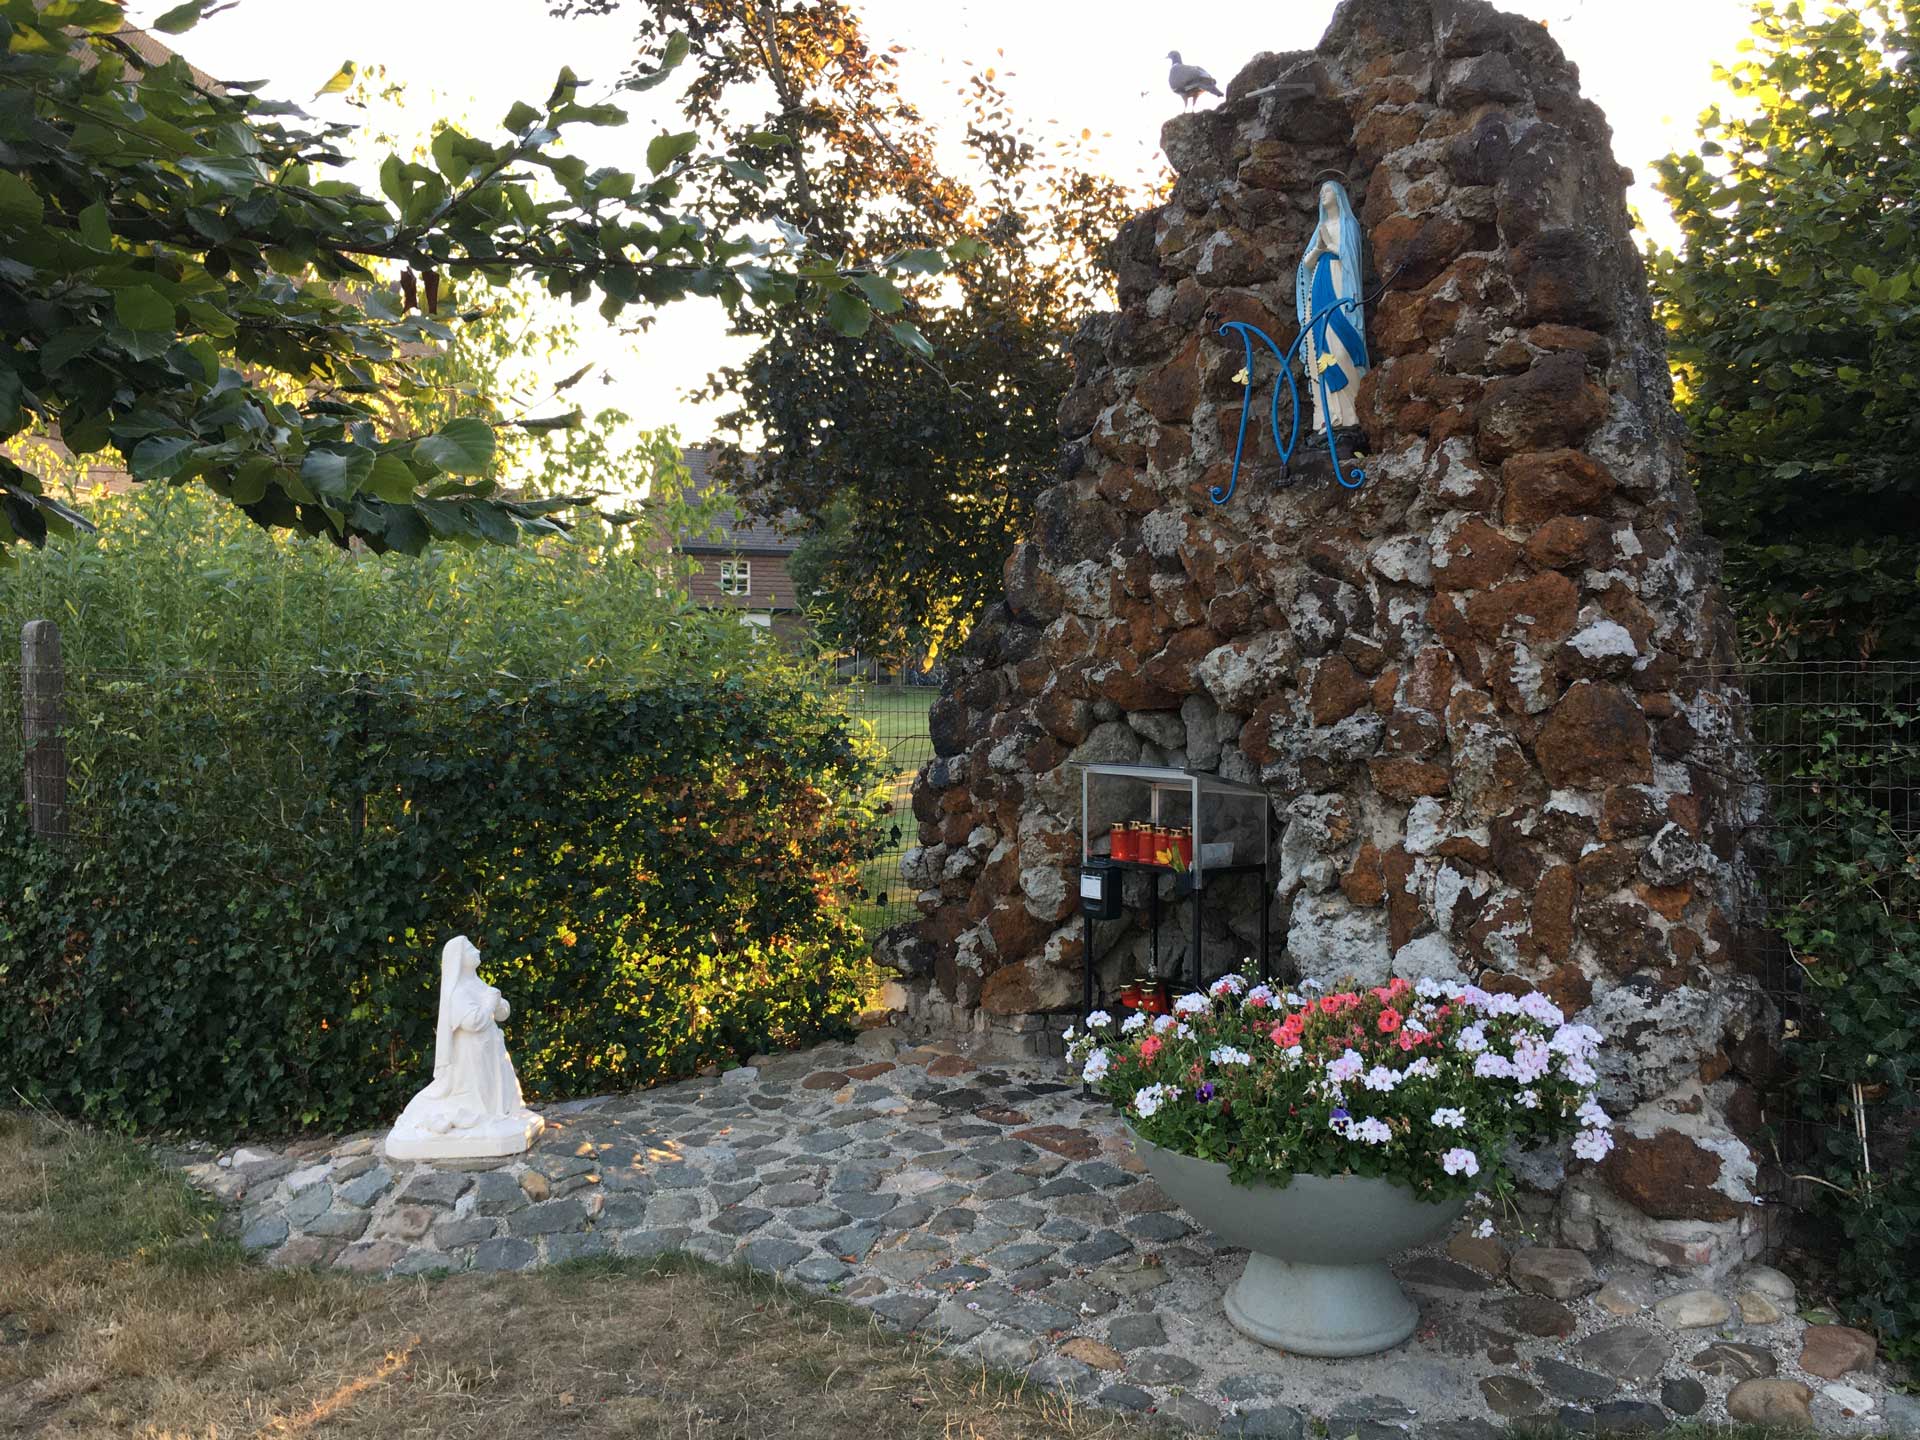 De Lourdesgrot in de tuin van de Sint-Agathakerk (foto: Henk van Thiel)